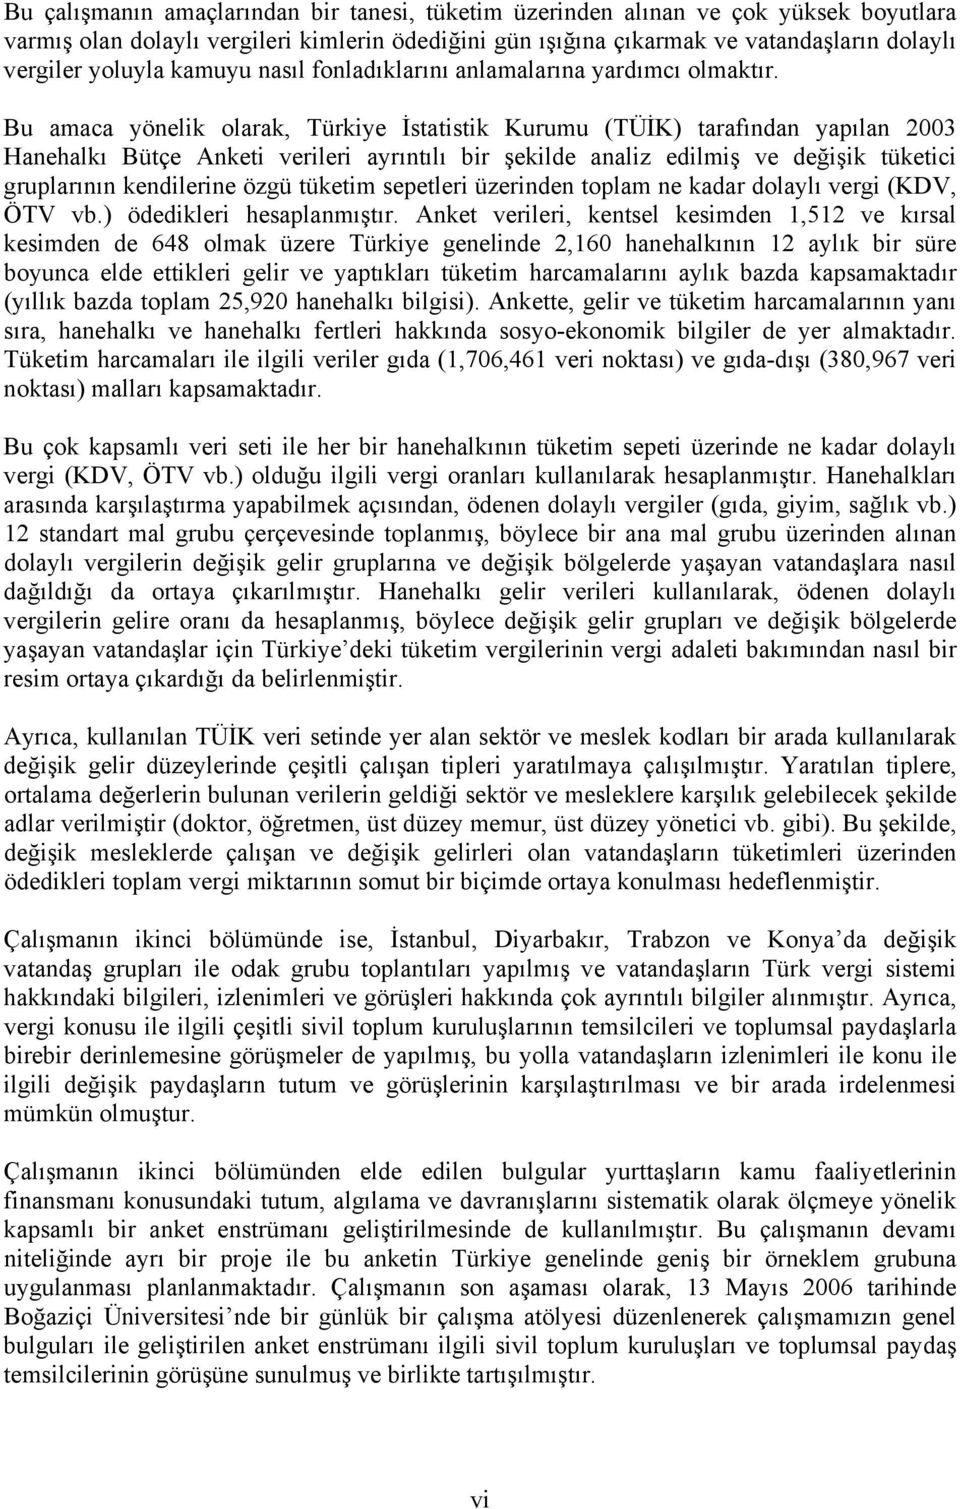 Bu amaca yönelik olarak, Türkiye İstatistik Kurumu (TÜİK) tarafından yapılan 2003 Hanehalkı Bütçe Anketi verileri ayrıntılı bir şekilde analiz edilmiş ve değişik tüketici gruplarının kendilerine özgü